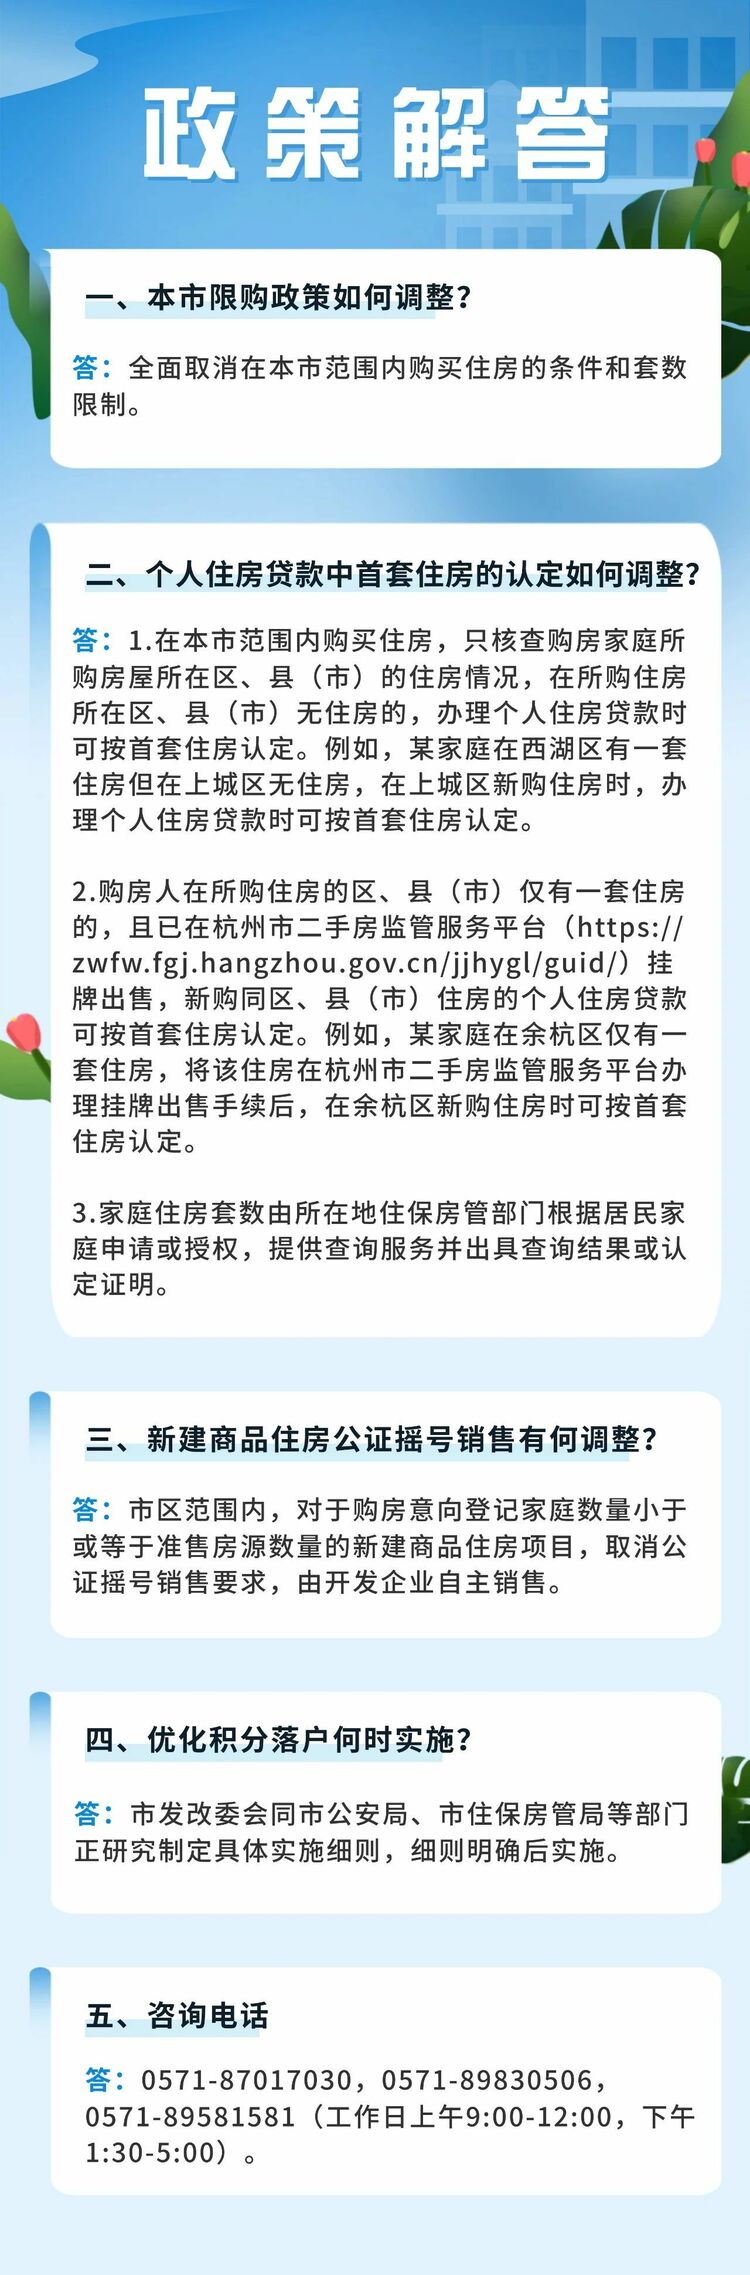 杭州：悉数废除住房限购 购房可申请落户